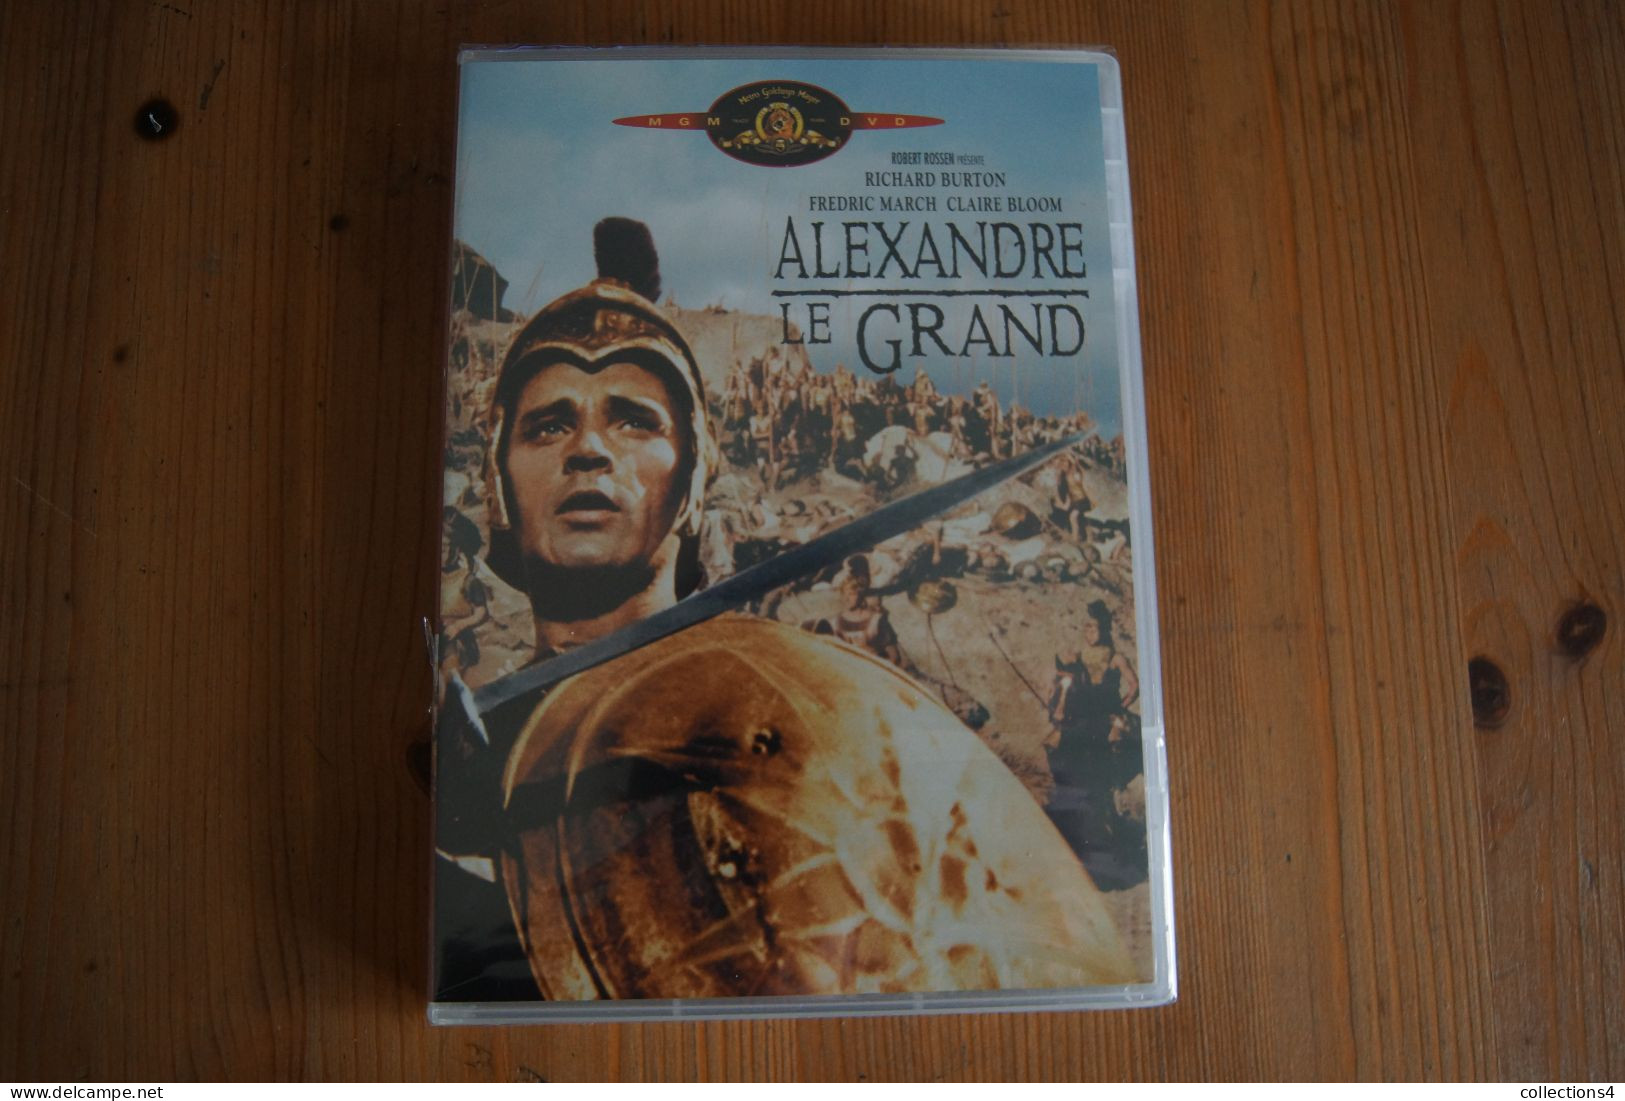 ALEXANDRE LE GRAND RICHARD BURTON F MARCH CLAIRE BLOOM  DVD NEUF SCELLE DU FILM DE ROBERT ROSSEN 1956 - Action, Aventure